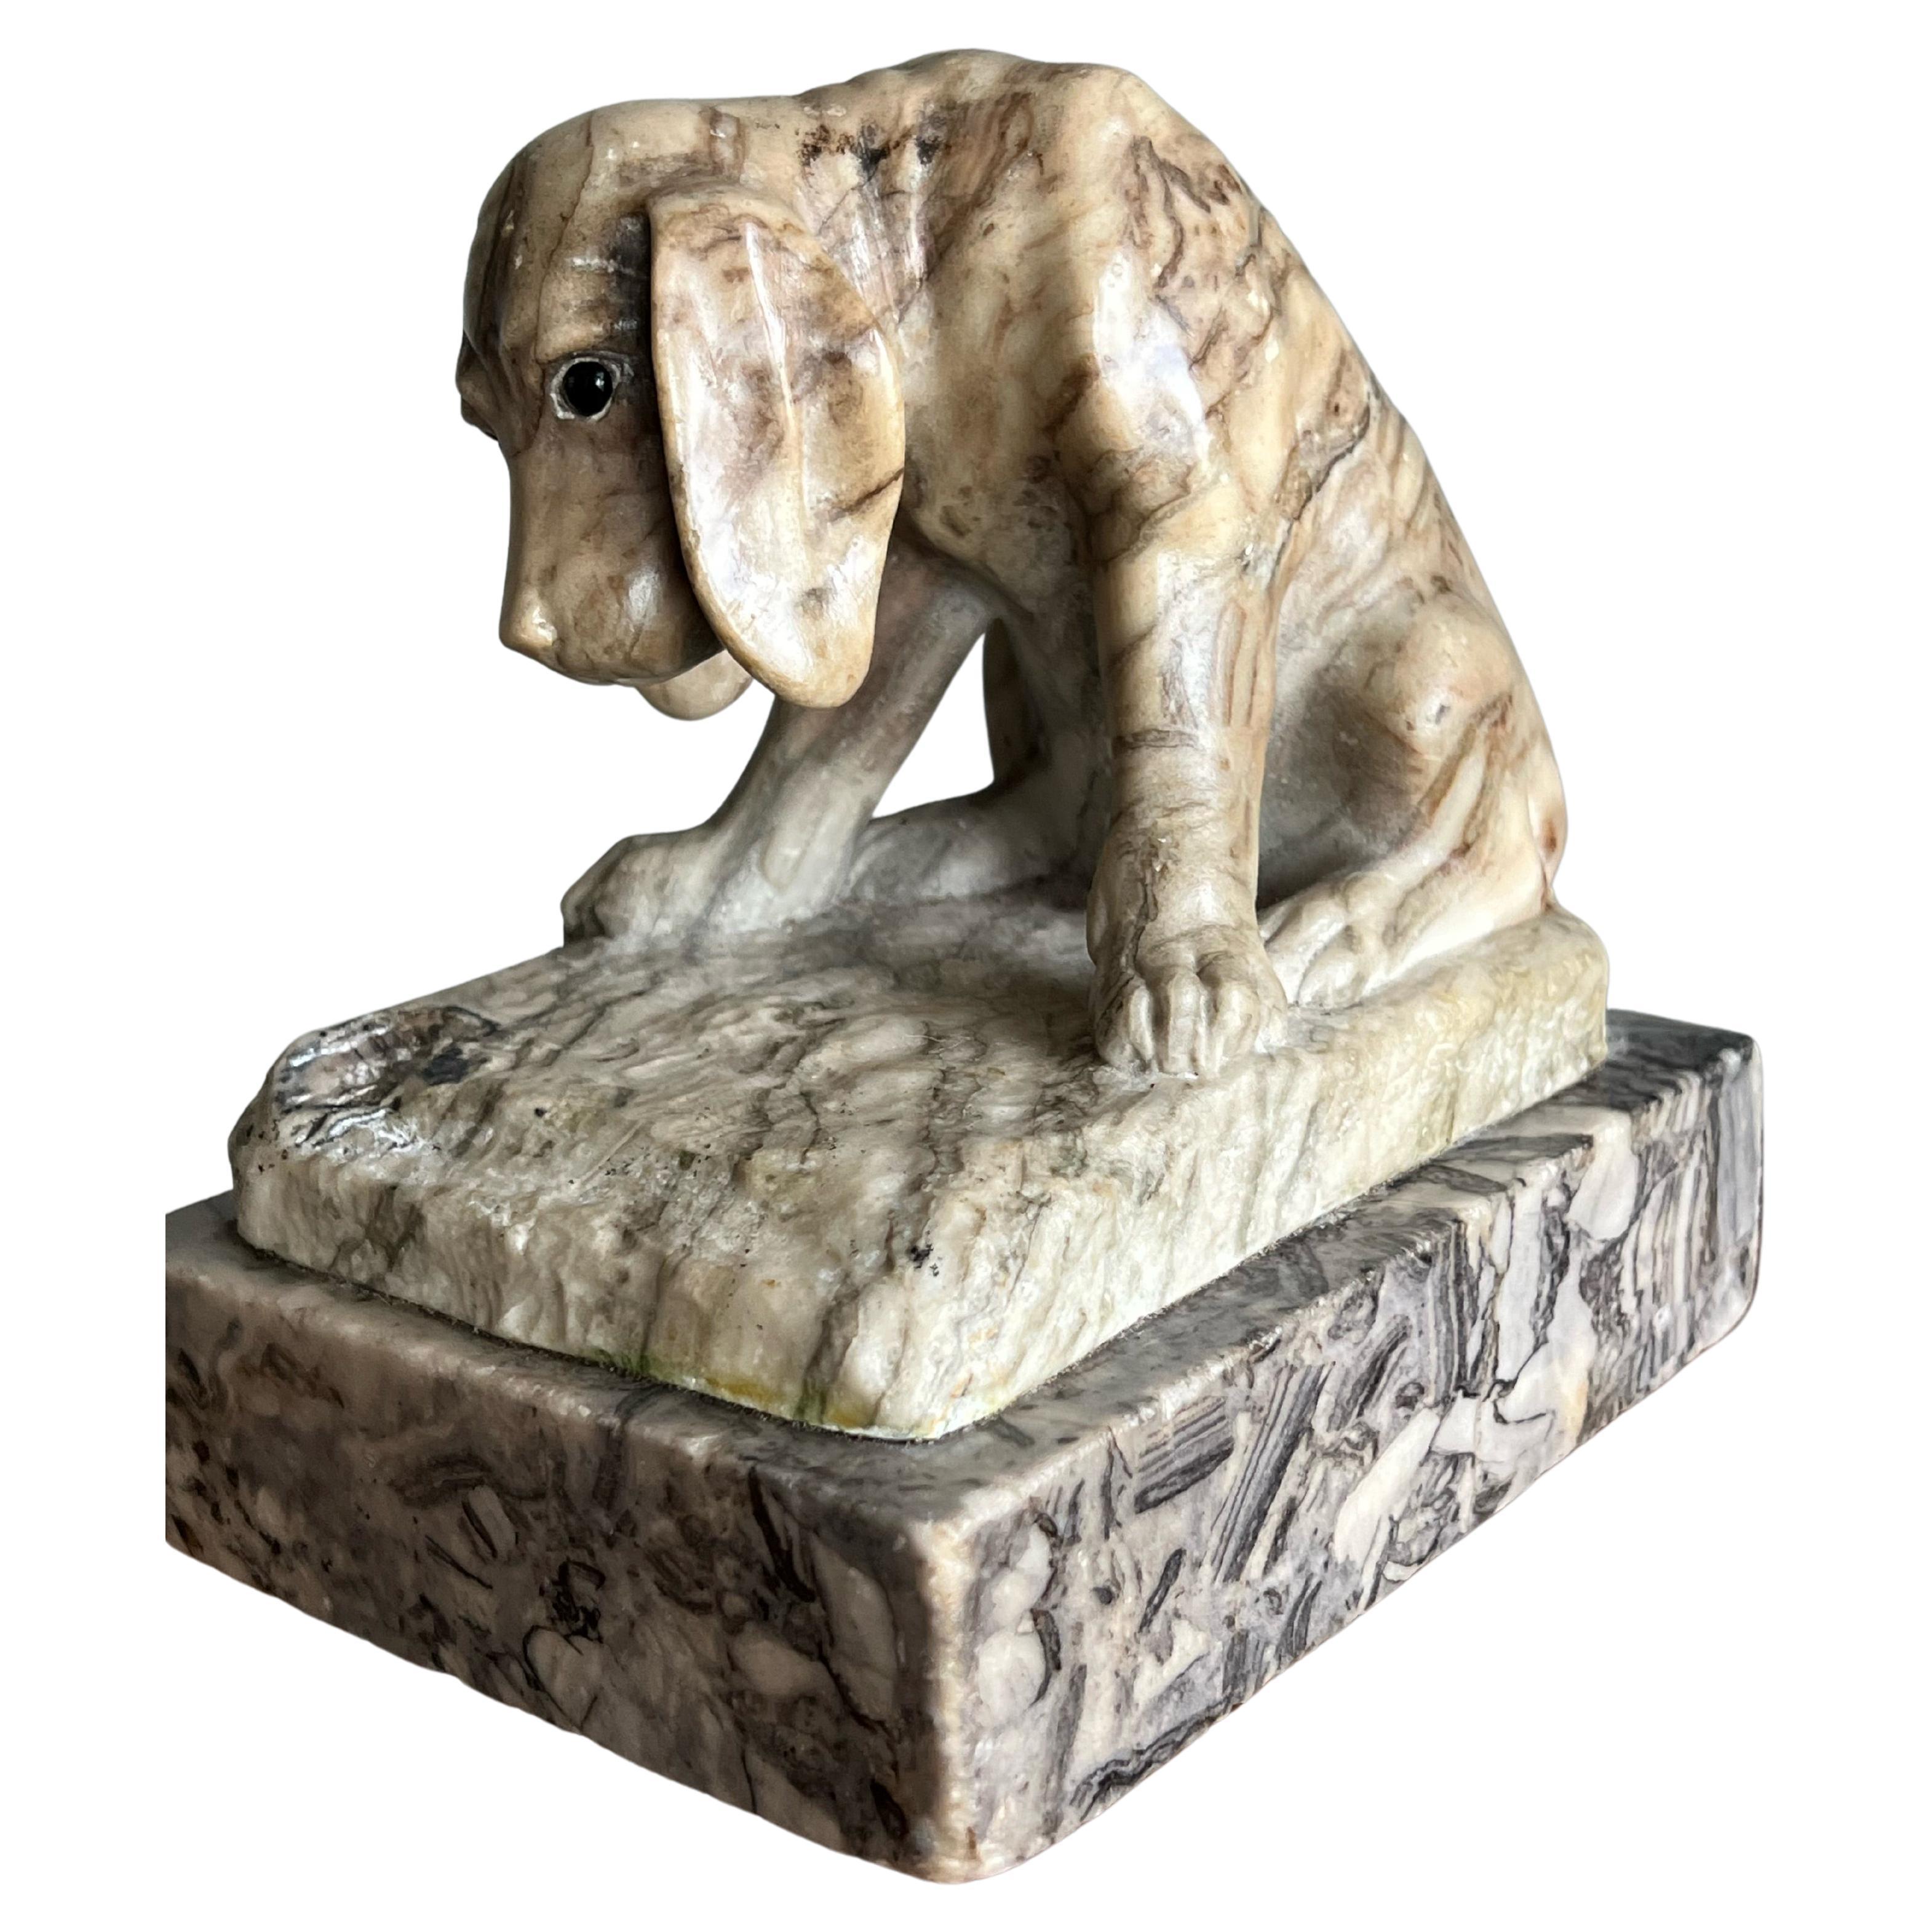 Antike signierte Alabaster-Puppy-Skulptur von Ernst Beck, hervorragende Verarbeitung